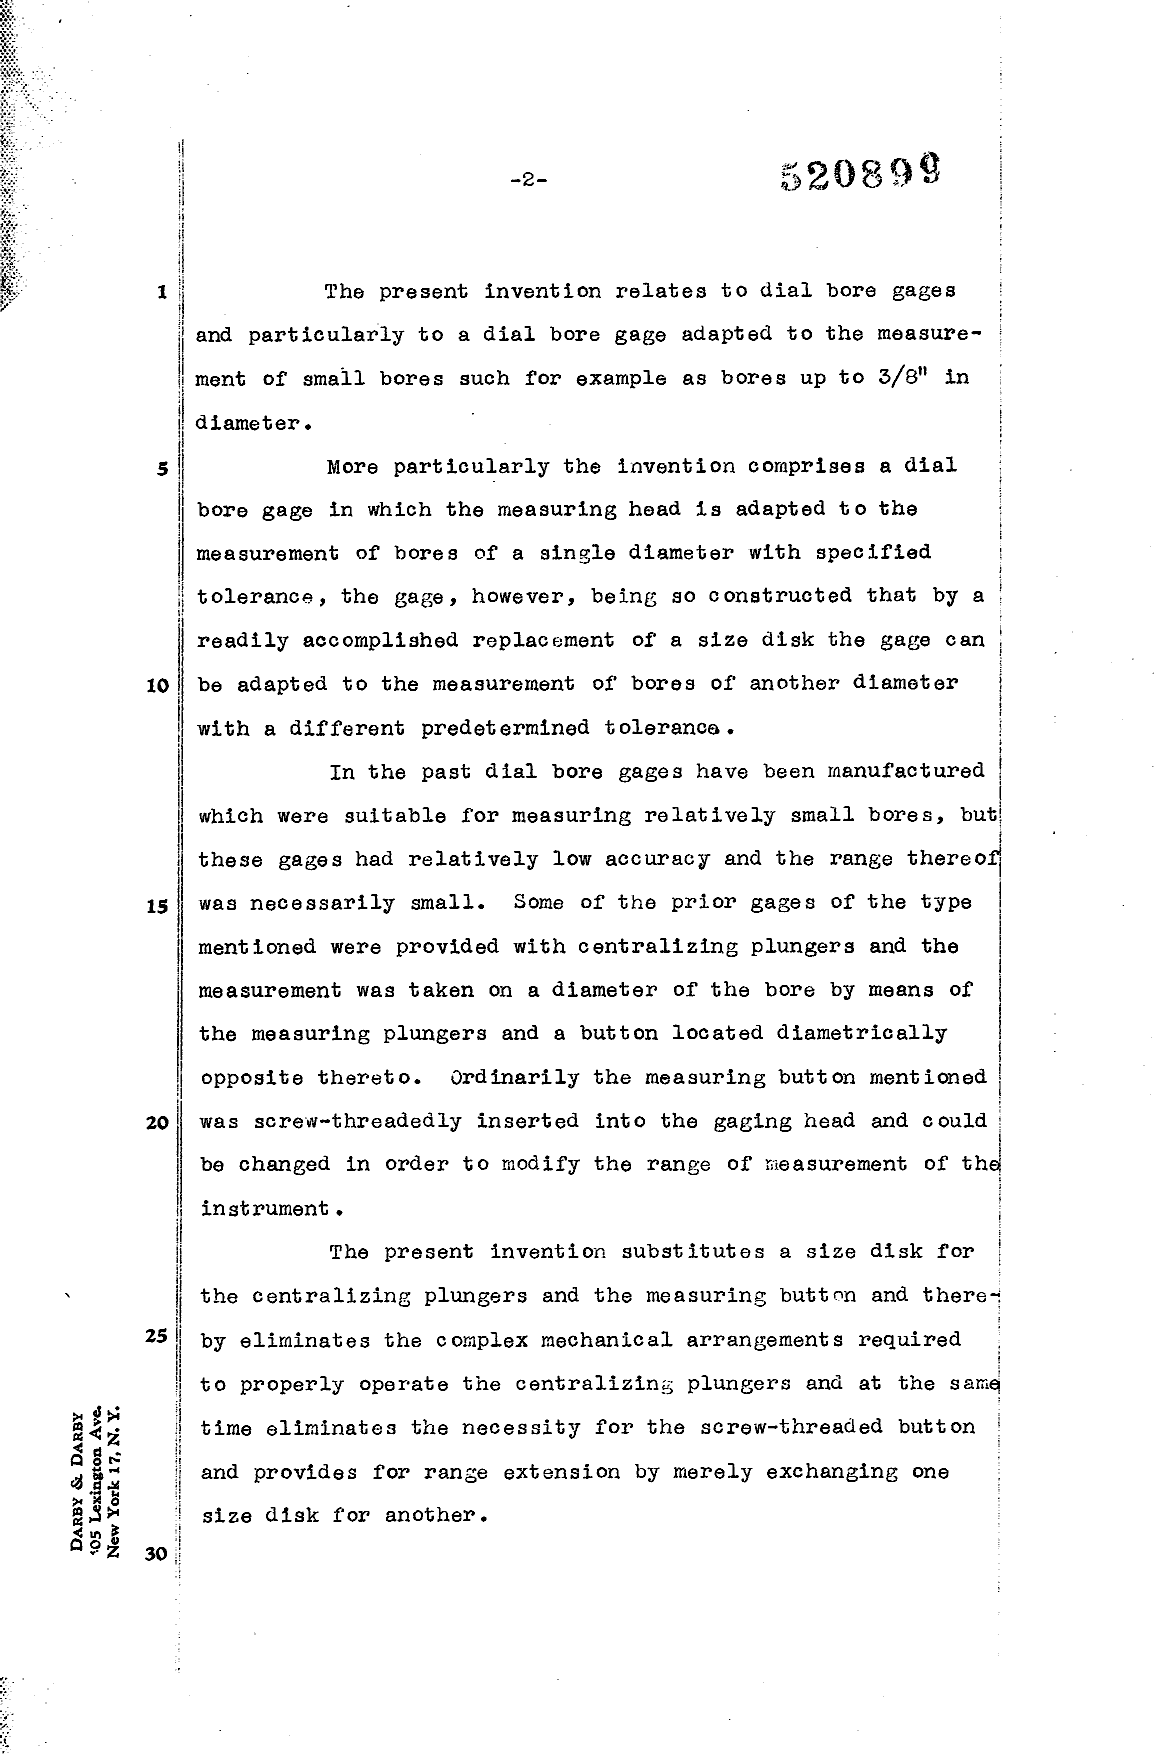 Canadian Patent Document 520899. Description 19950510. Image 1 of 7